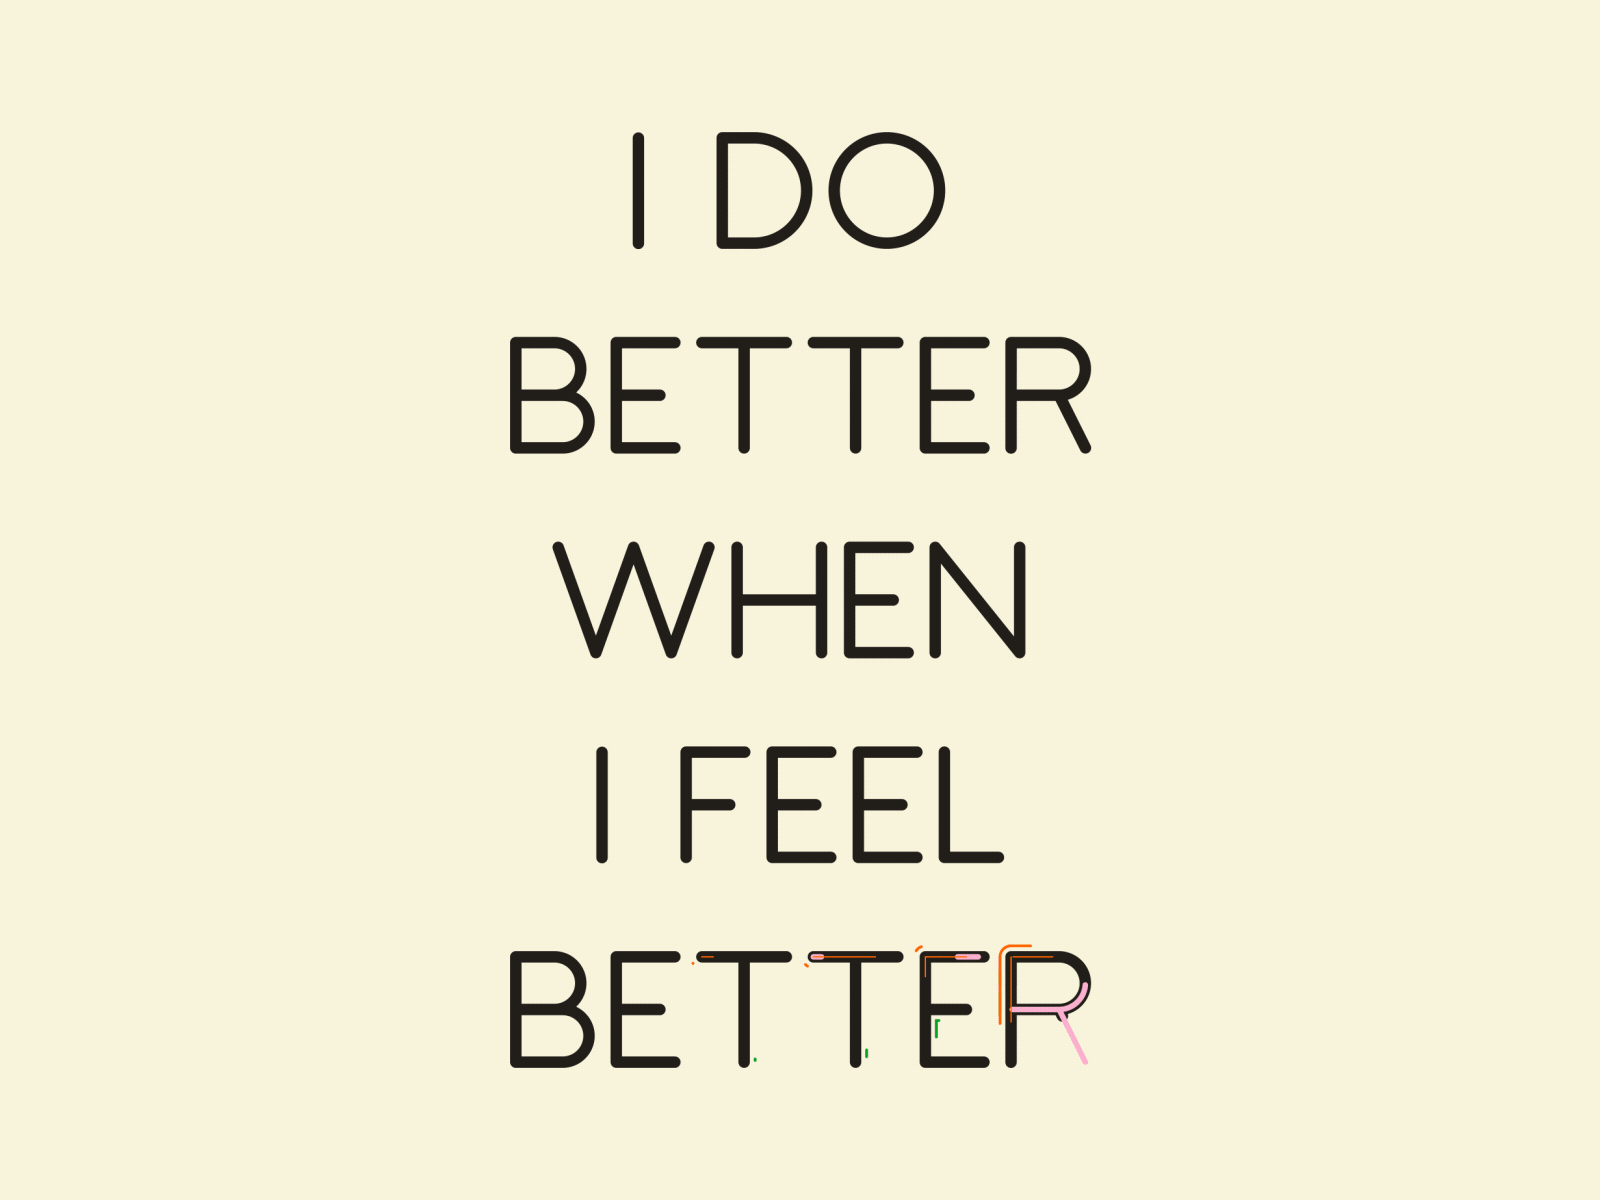 I do better when I feel better.